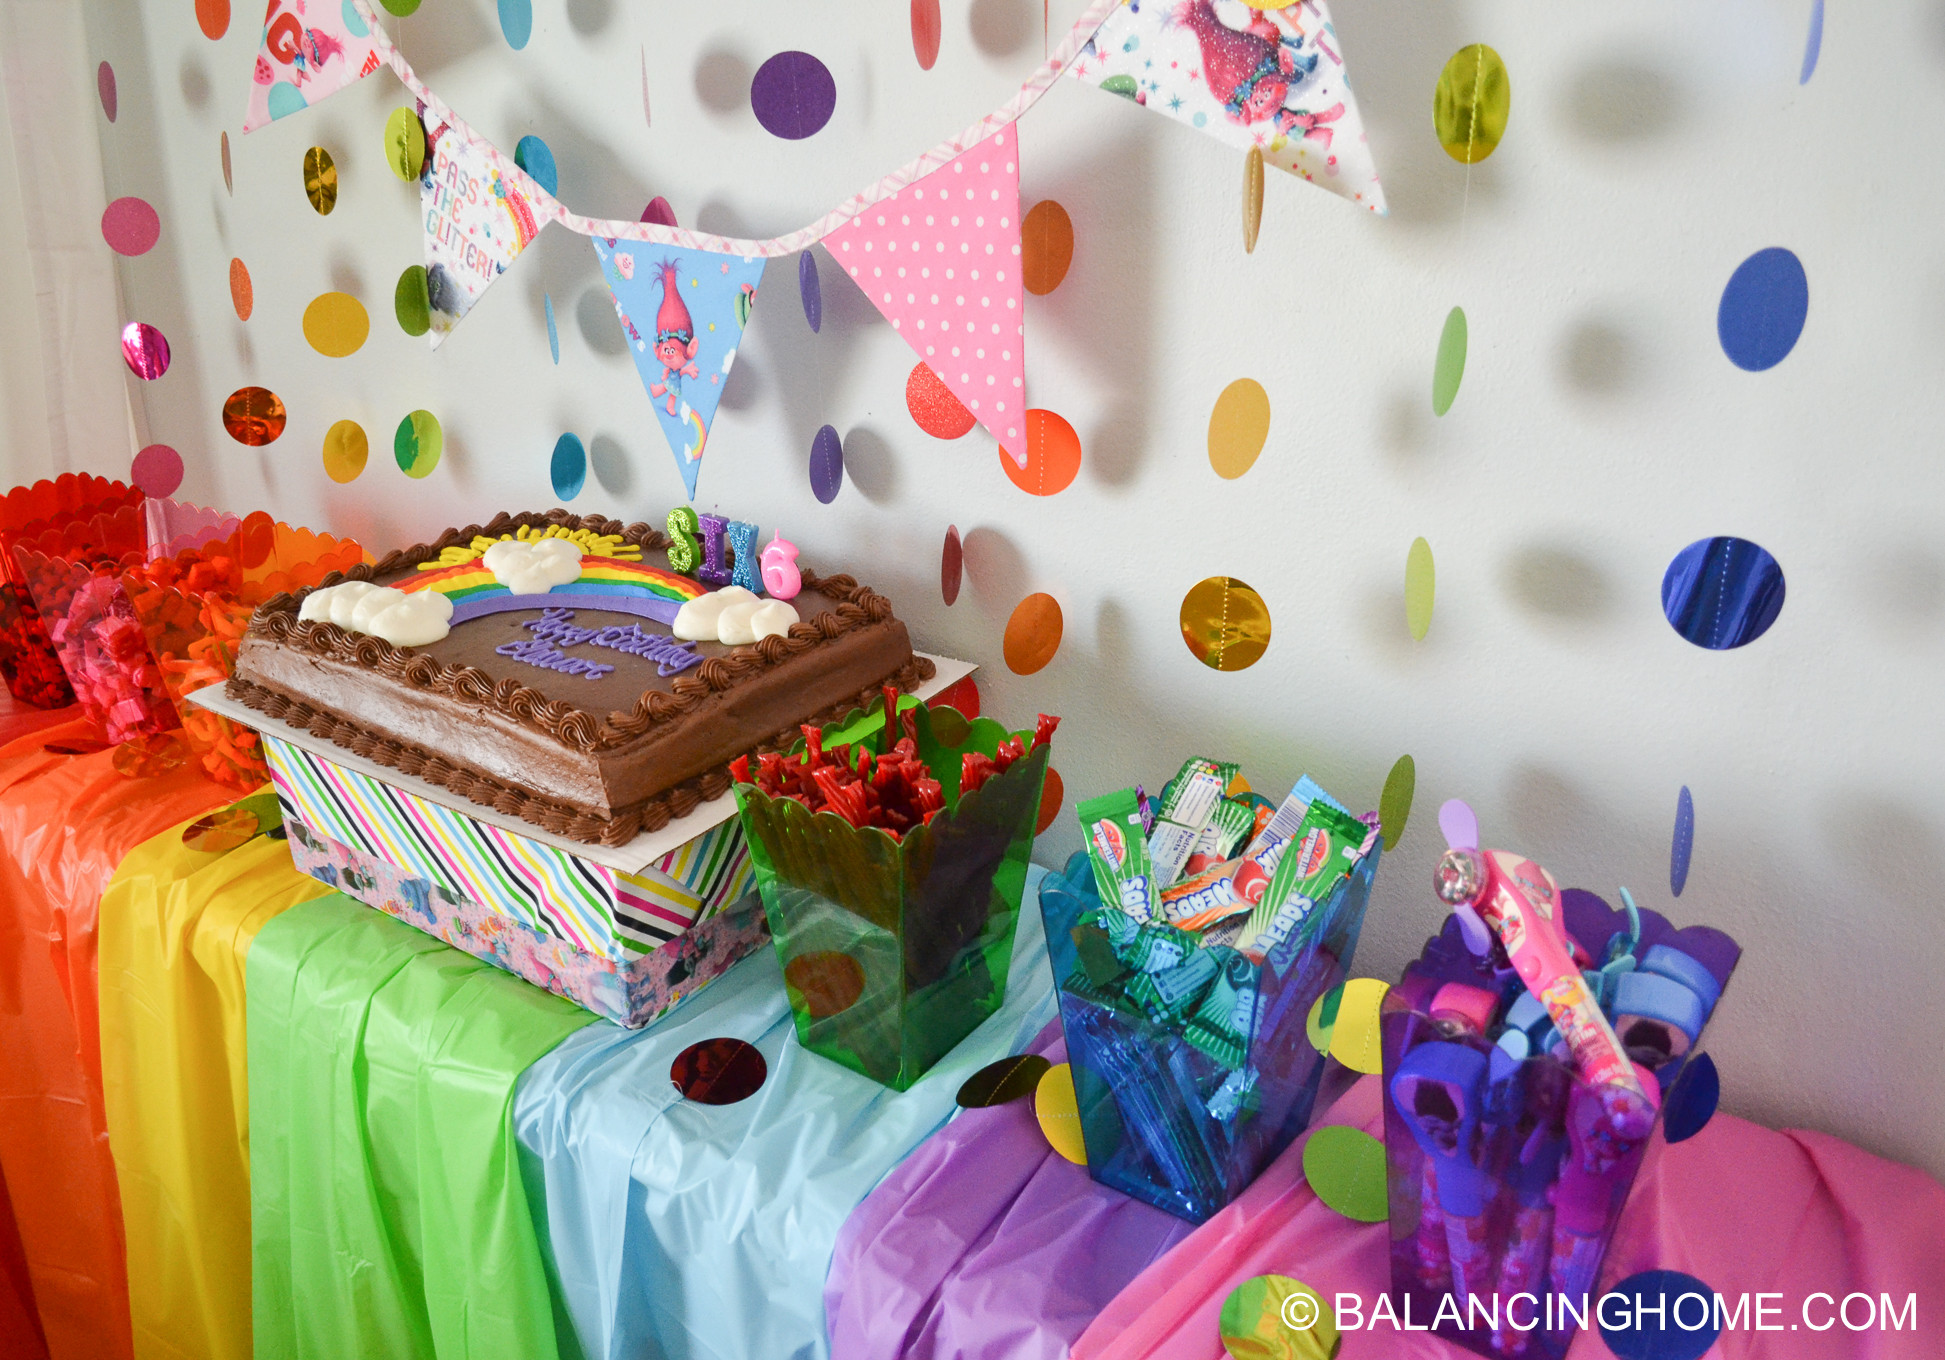 Trolls Party Decoration Ideas
 Trolls Birthday Party Ideas for a Simple Trolls Themed